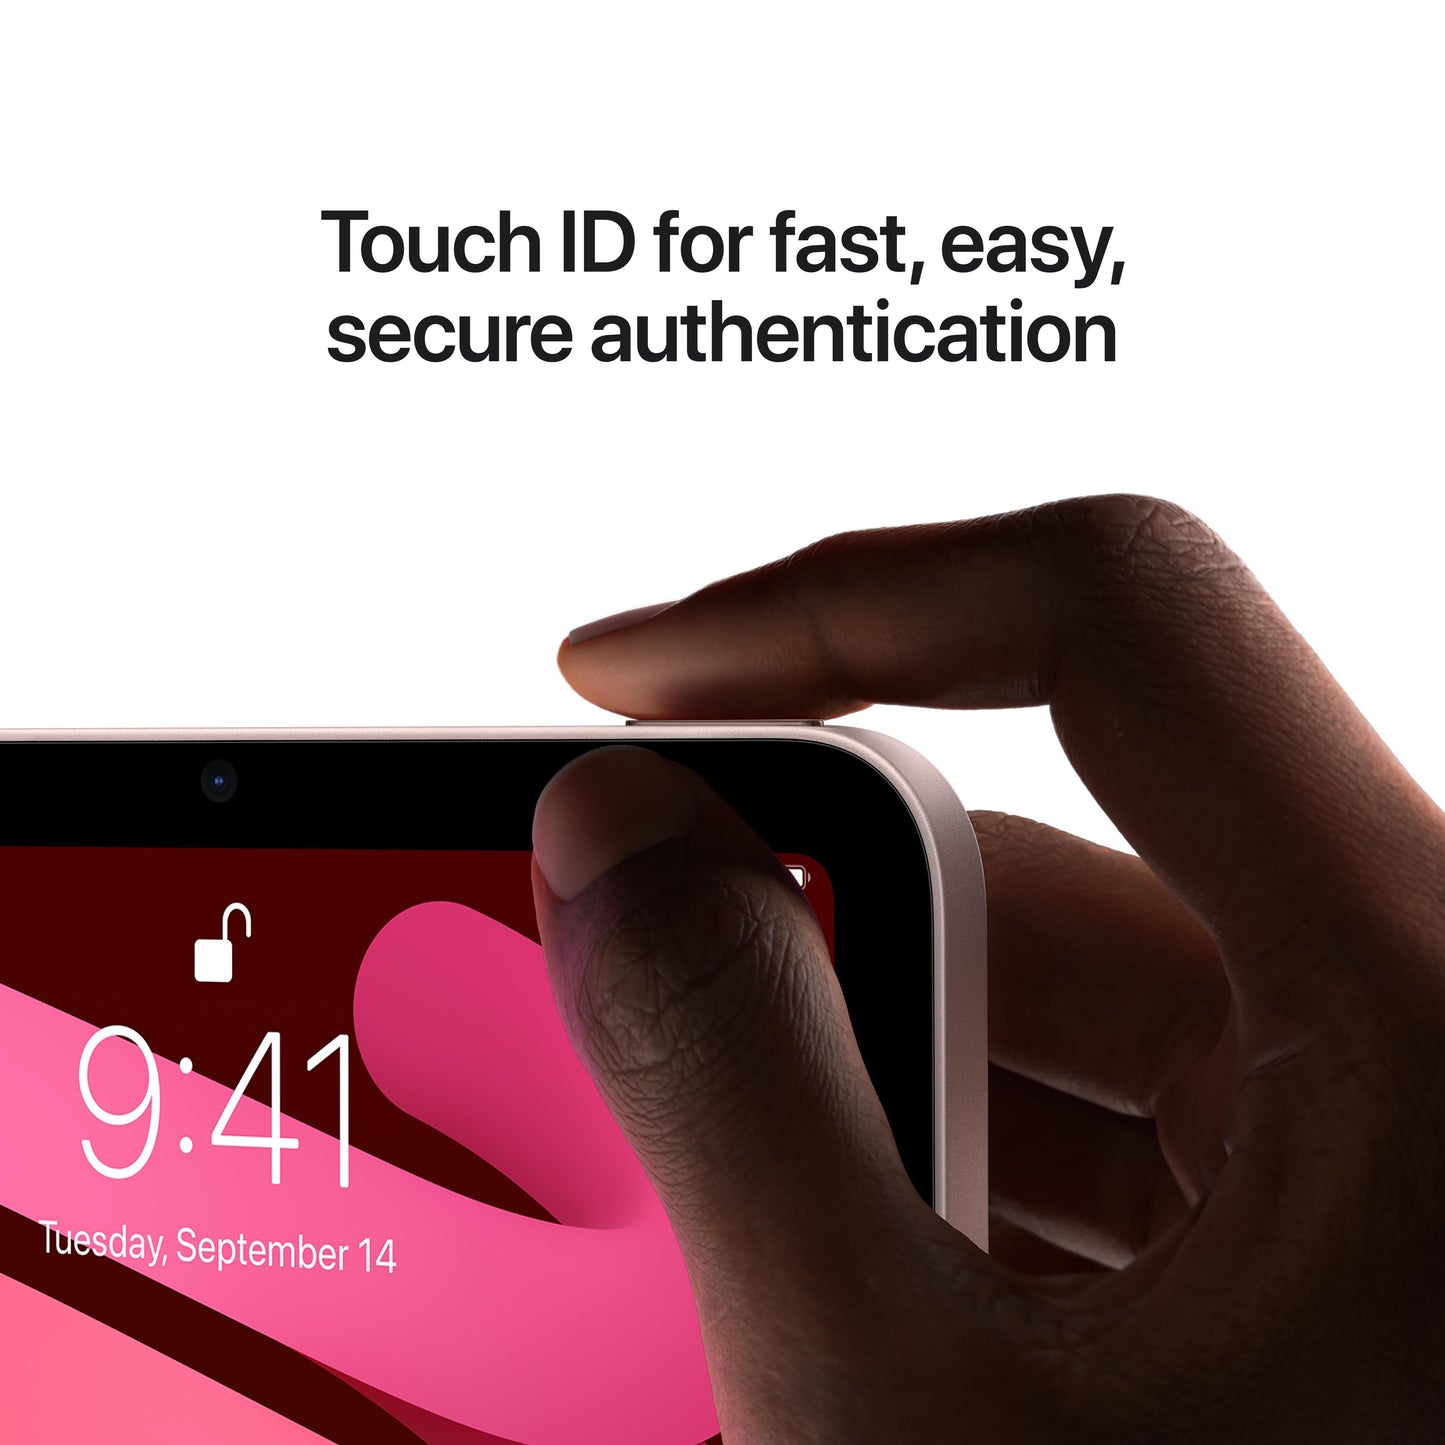 iPad mini (6th Gen) Wi-Fi 64GB - Pink